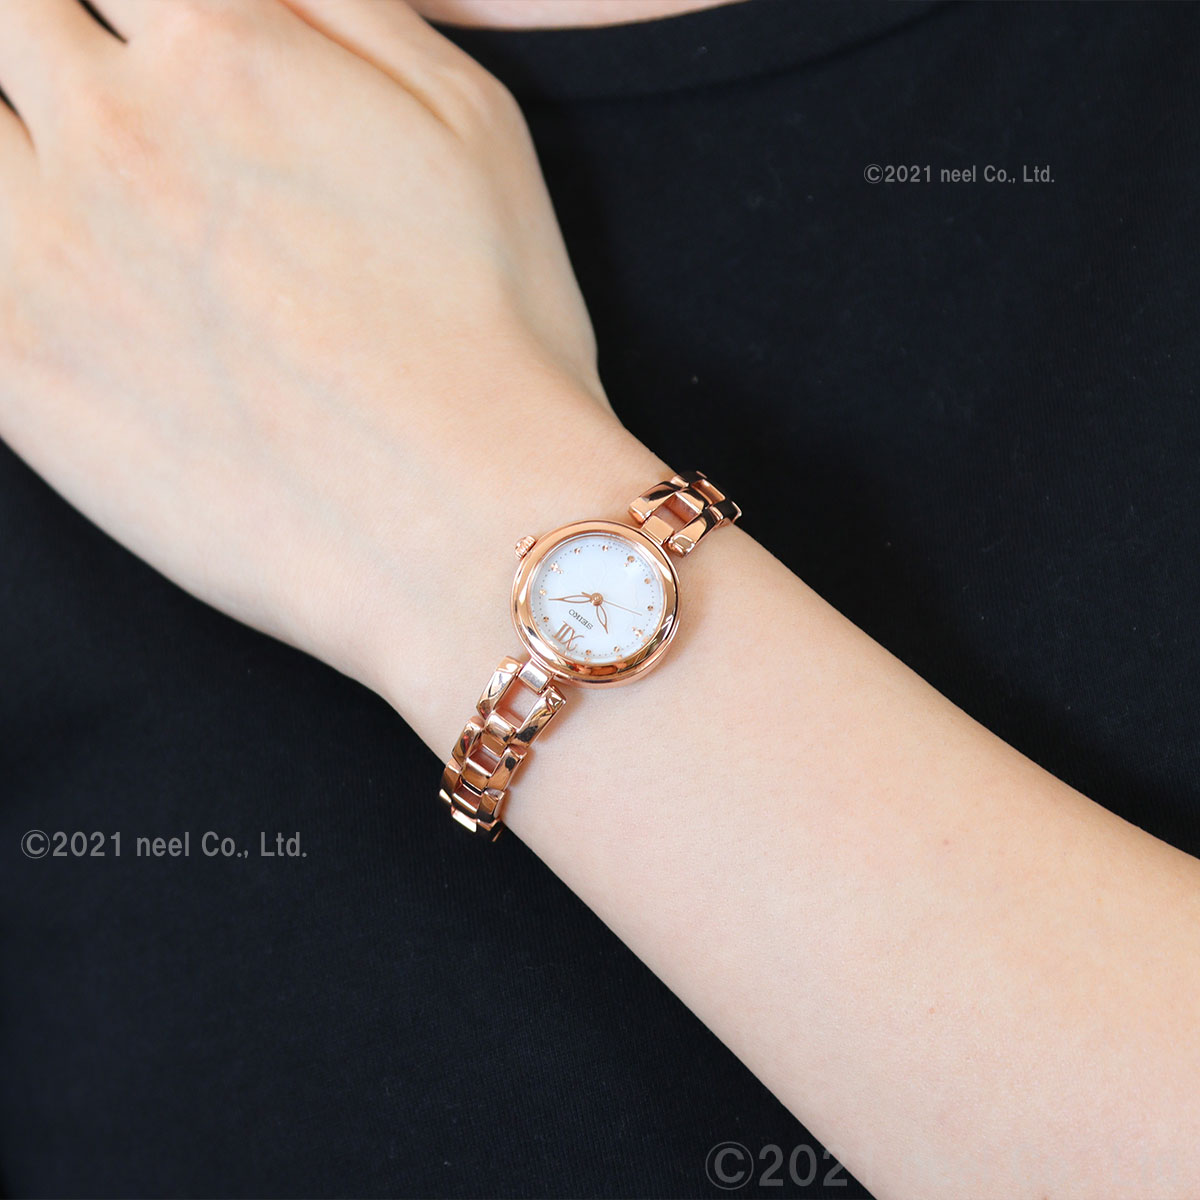 セイコー セレクション SEIKO SELECTION ソーラー 腕時計 レディース SWFA196